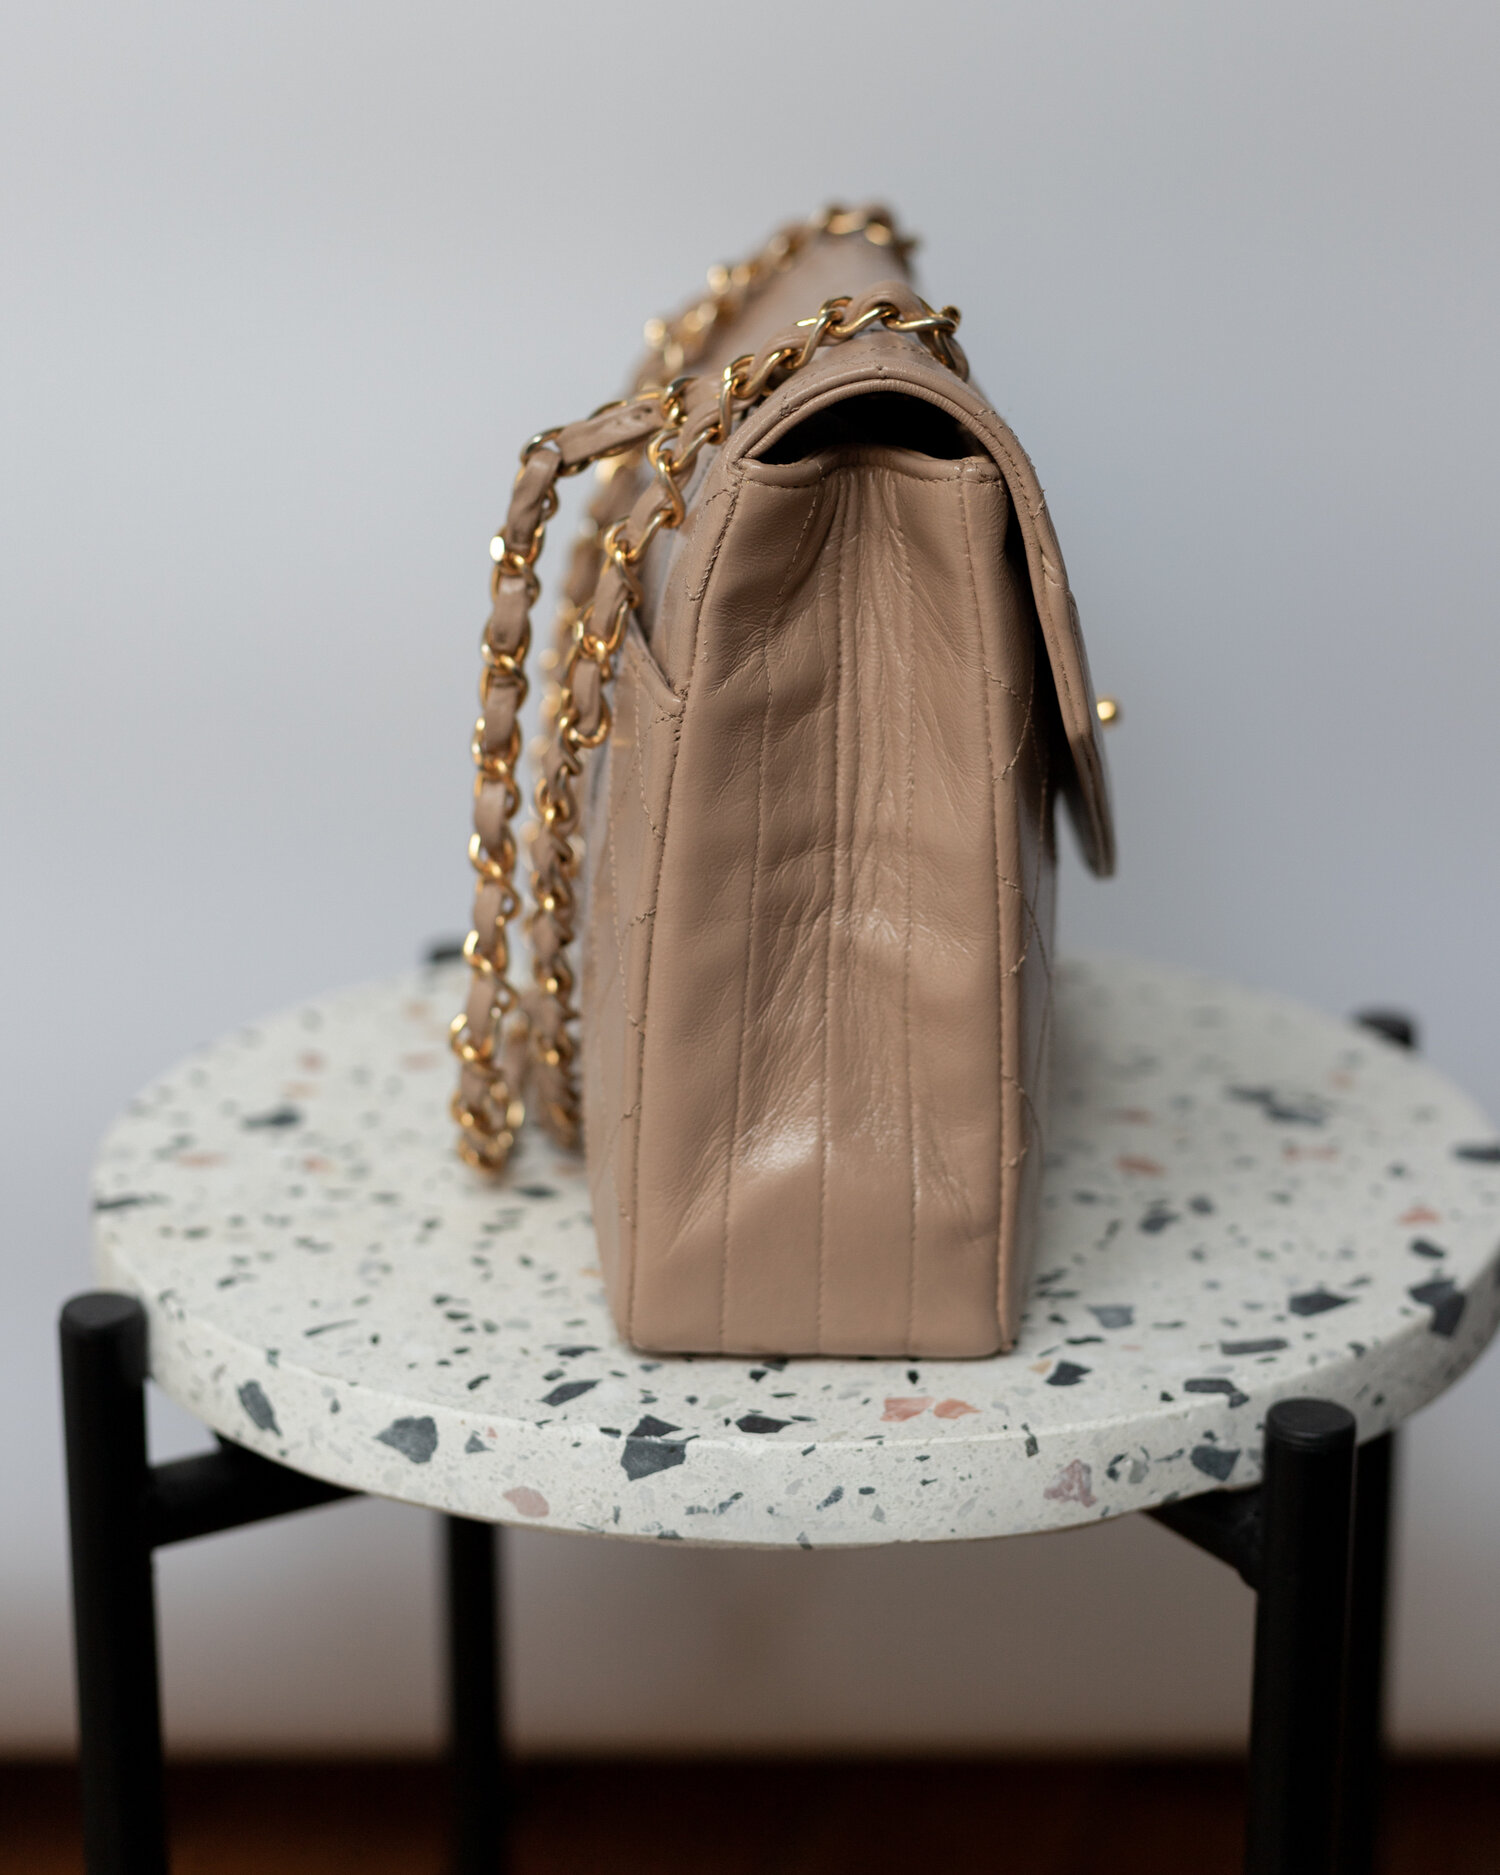 Vintage Chanel Flap Bag in Nude Color — singulié